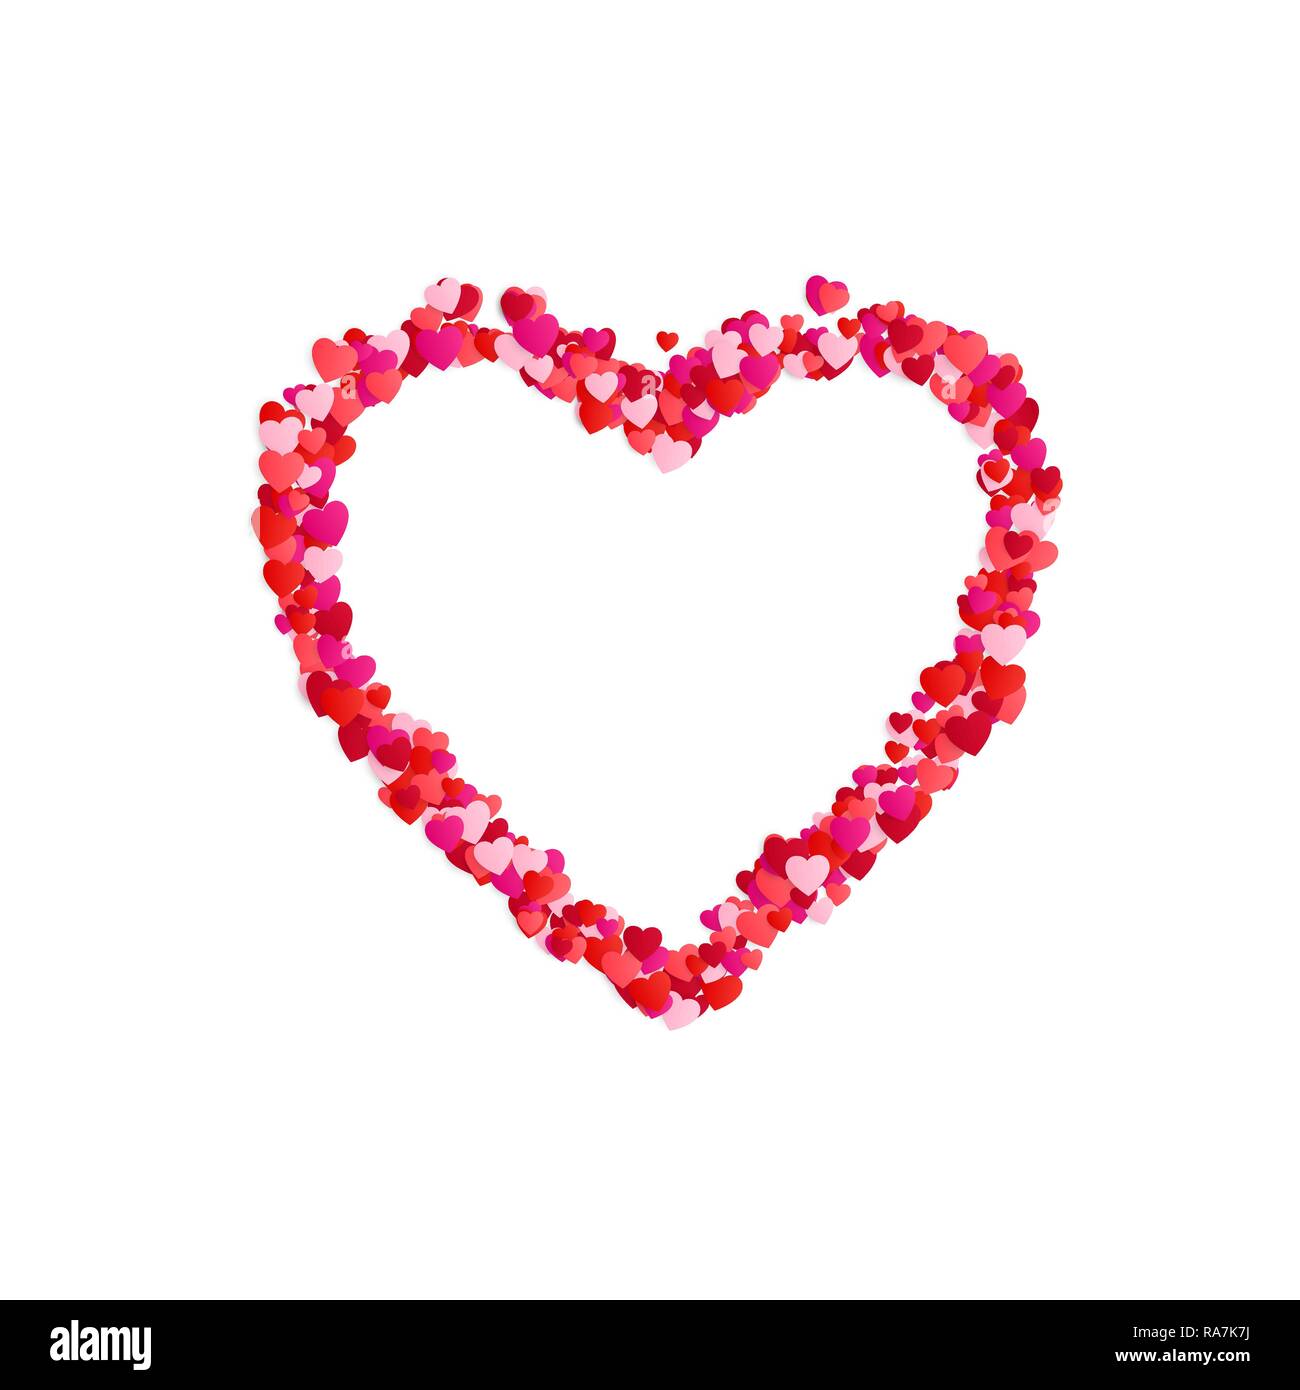 Heart frame. Romantische Dekoration Element. Valentine Karte Einrichtung Grenze. Vector Illustration auf weißem Hintergrund Stock Vektor